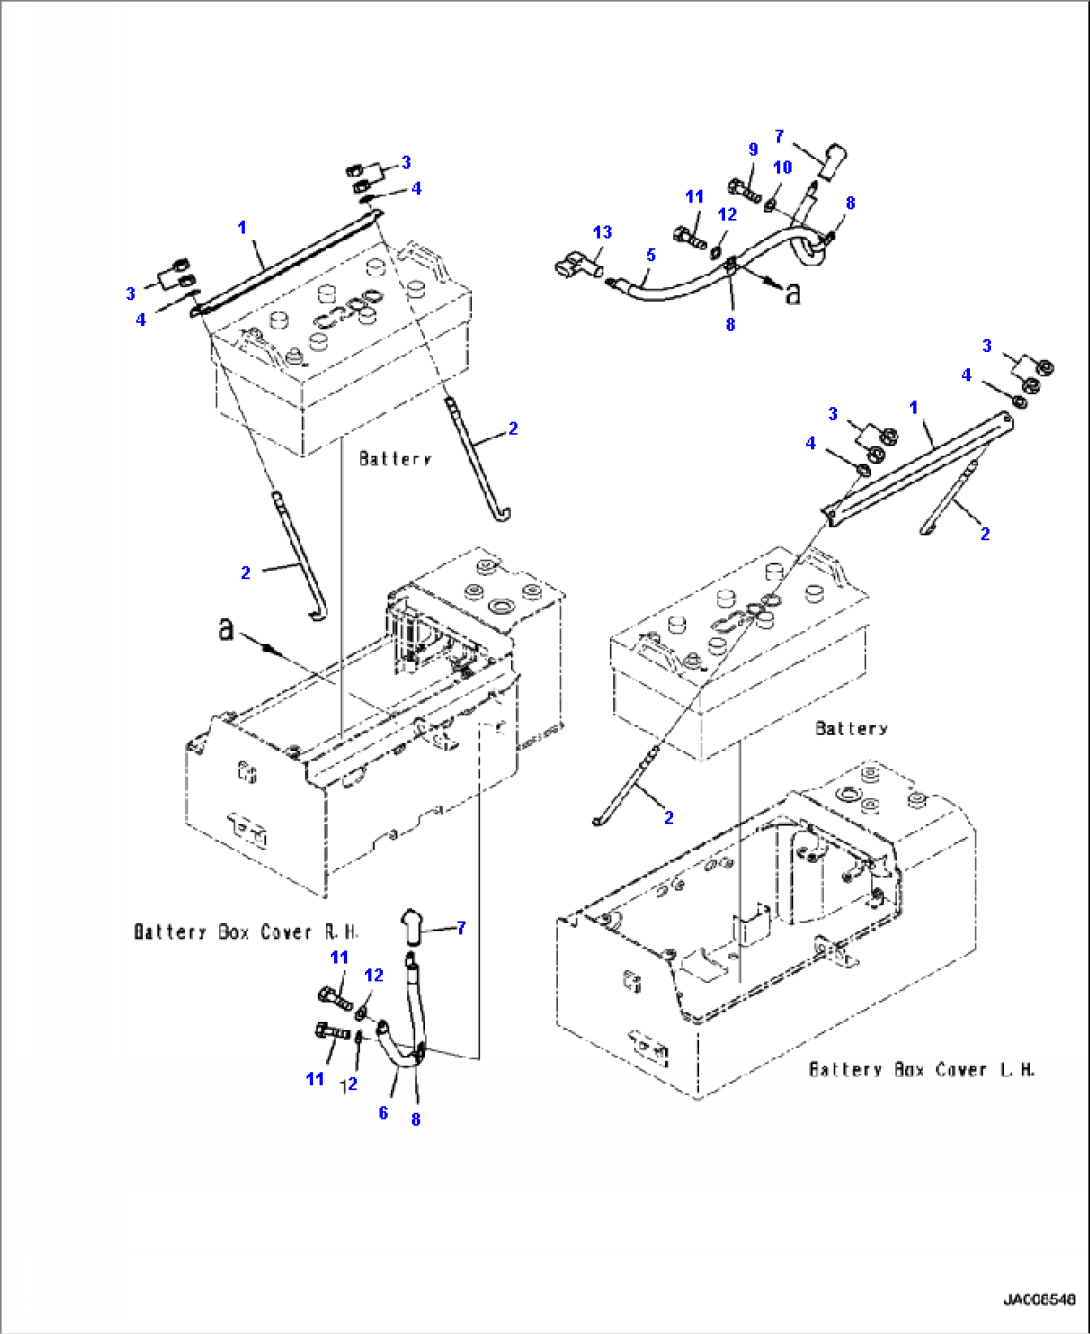 E0120-02A0 BATTERY BOX CABLE